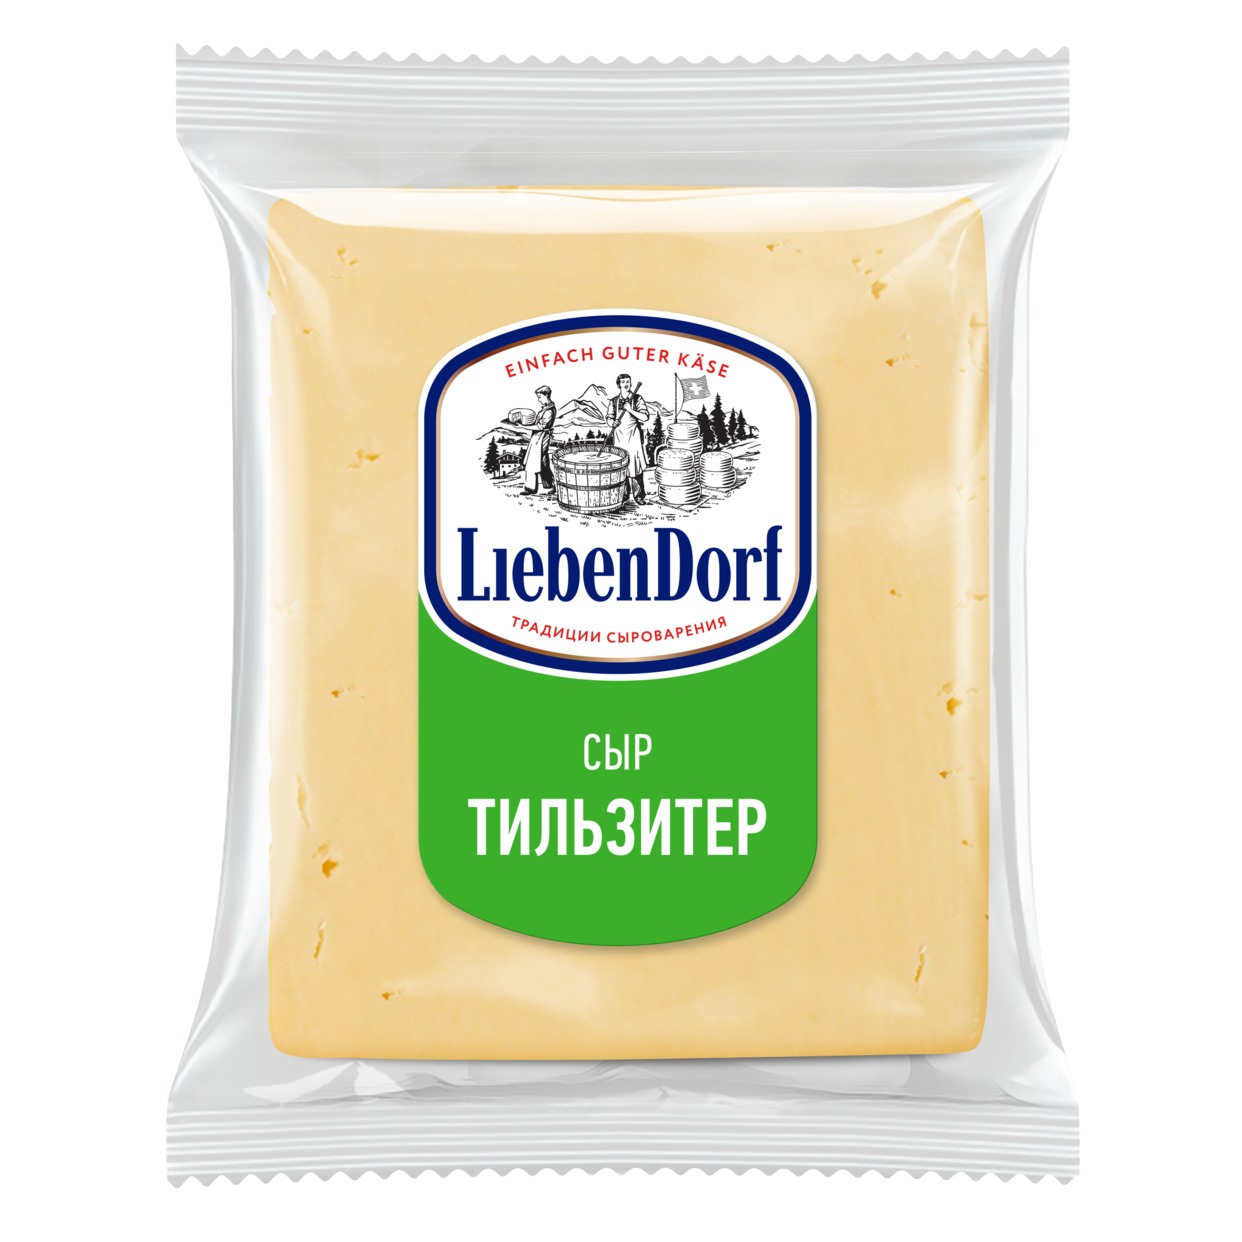 Сыр Тильзитер Liebendorf, фасованный *цена указана за 100 г по акции в Пятерочке